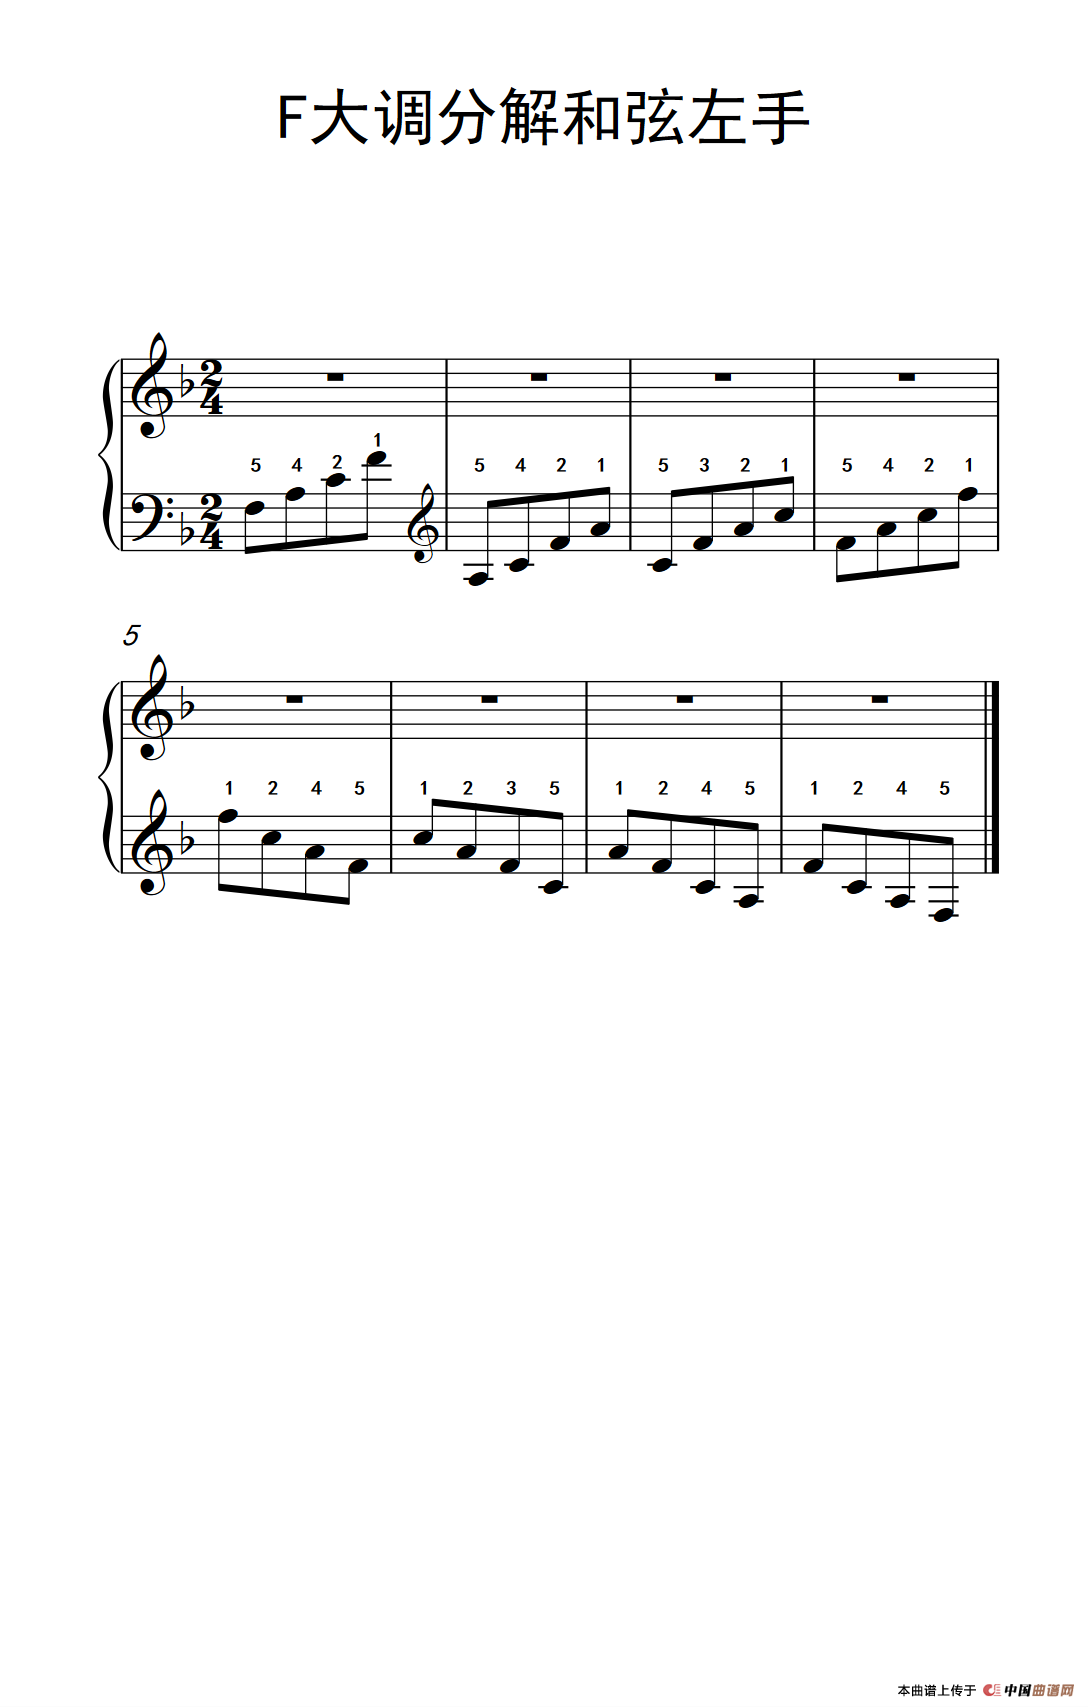 [钢琴谱] 第二级 5f大调分解和弦左手